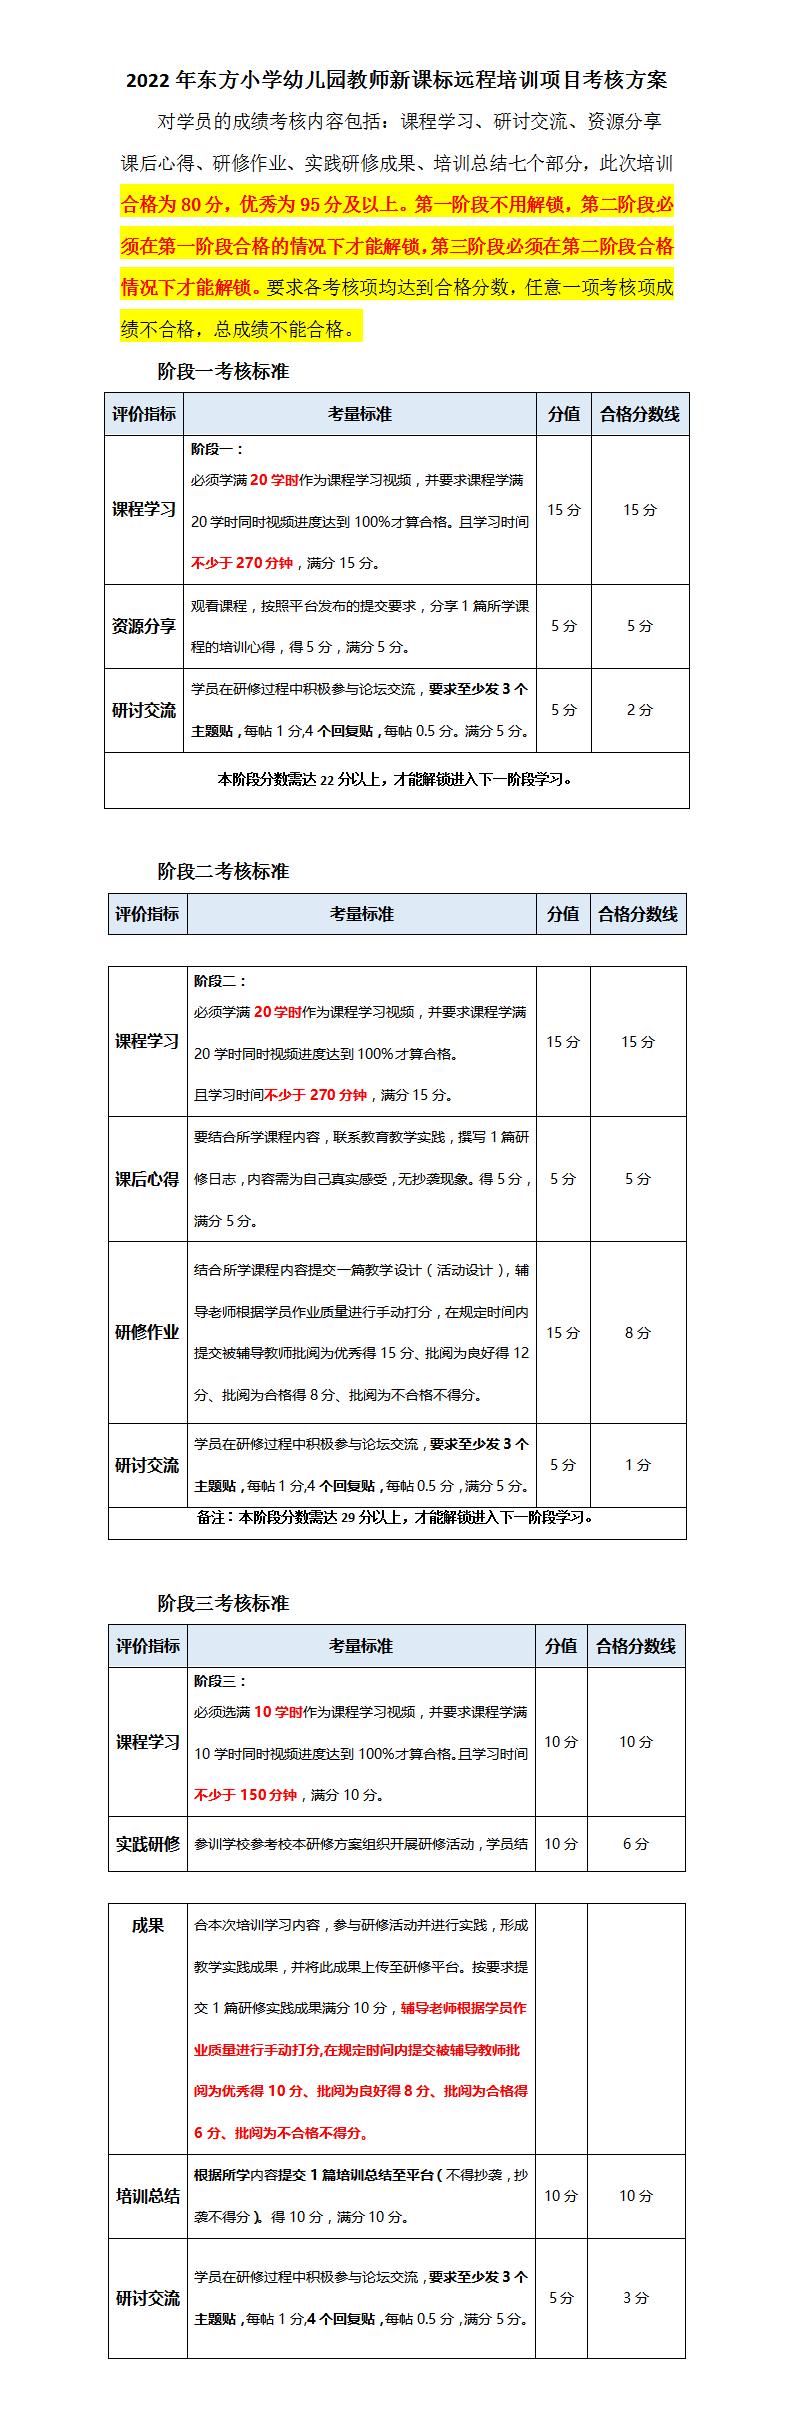 2022年东方小学幼儿园教师新课标远程培训项目考核方案(1)_01.jpg